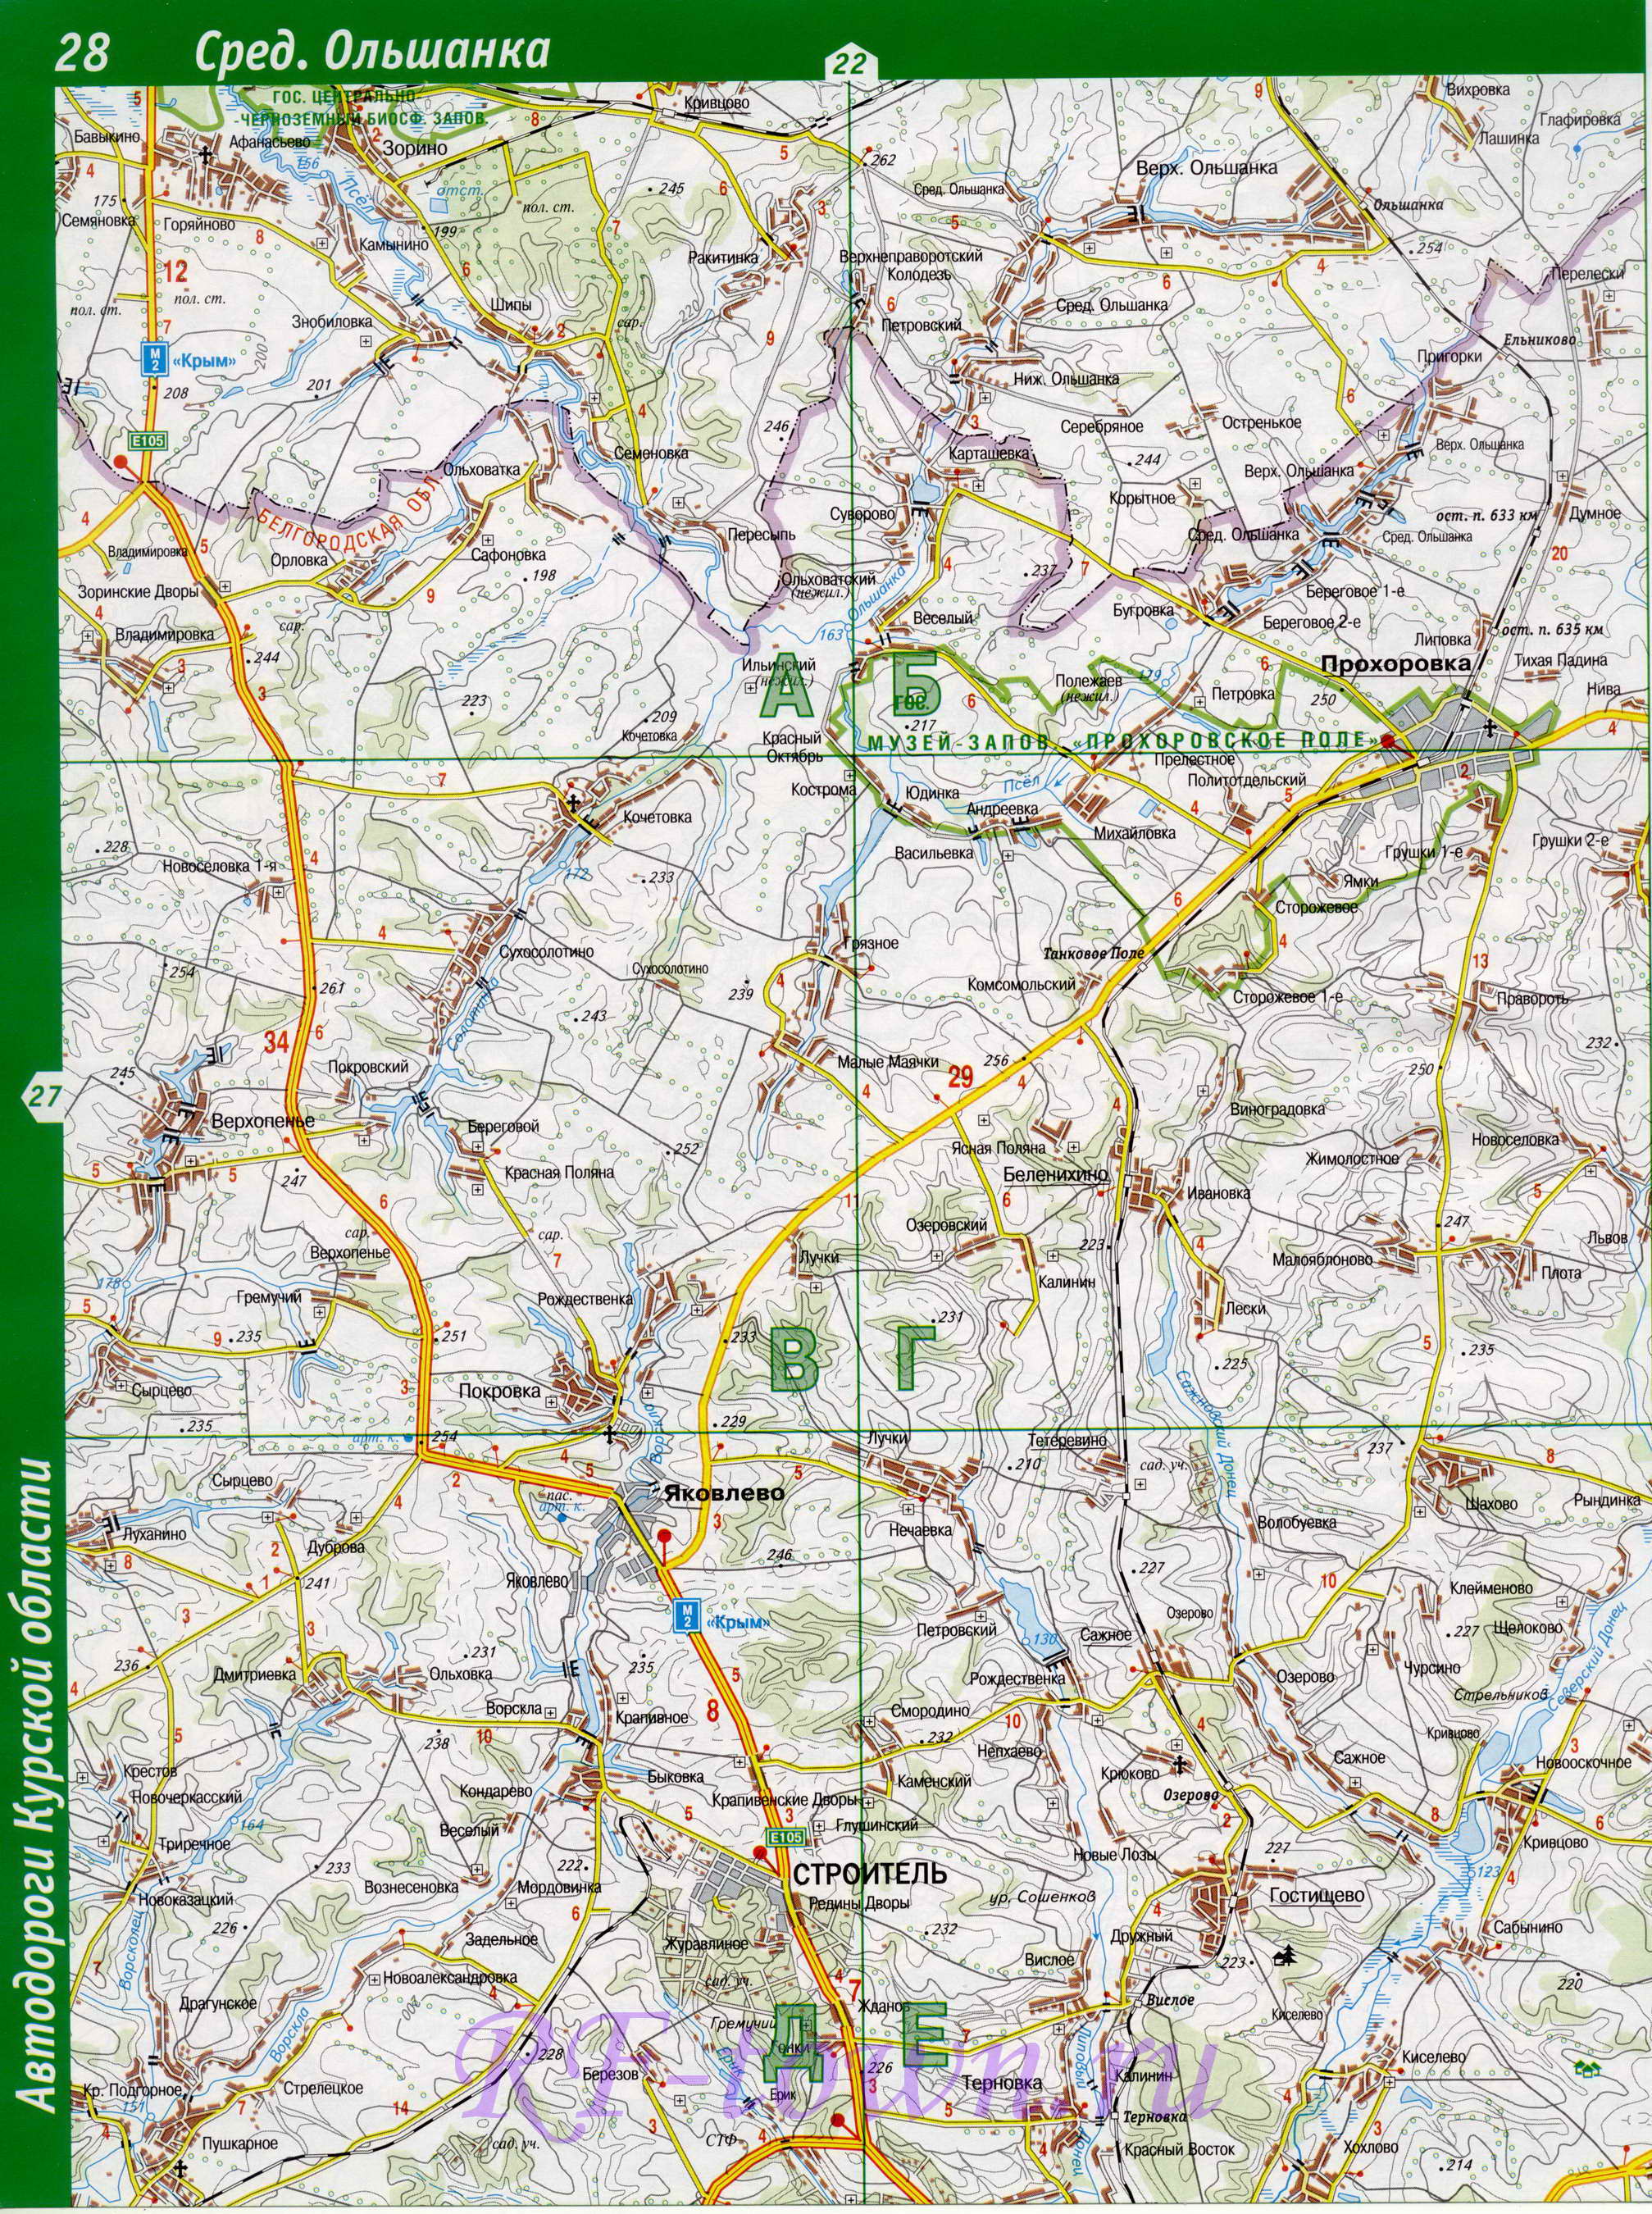 Карта Обоянского района. Большая подробная карта Обоянский район Курской области, B1 - 